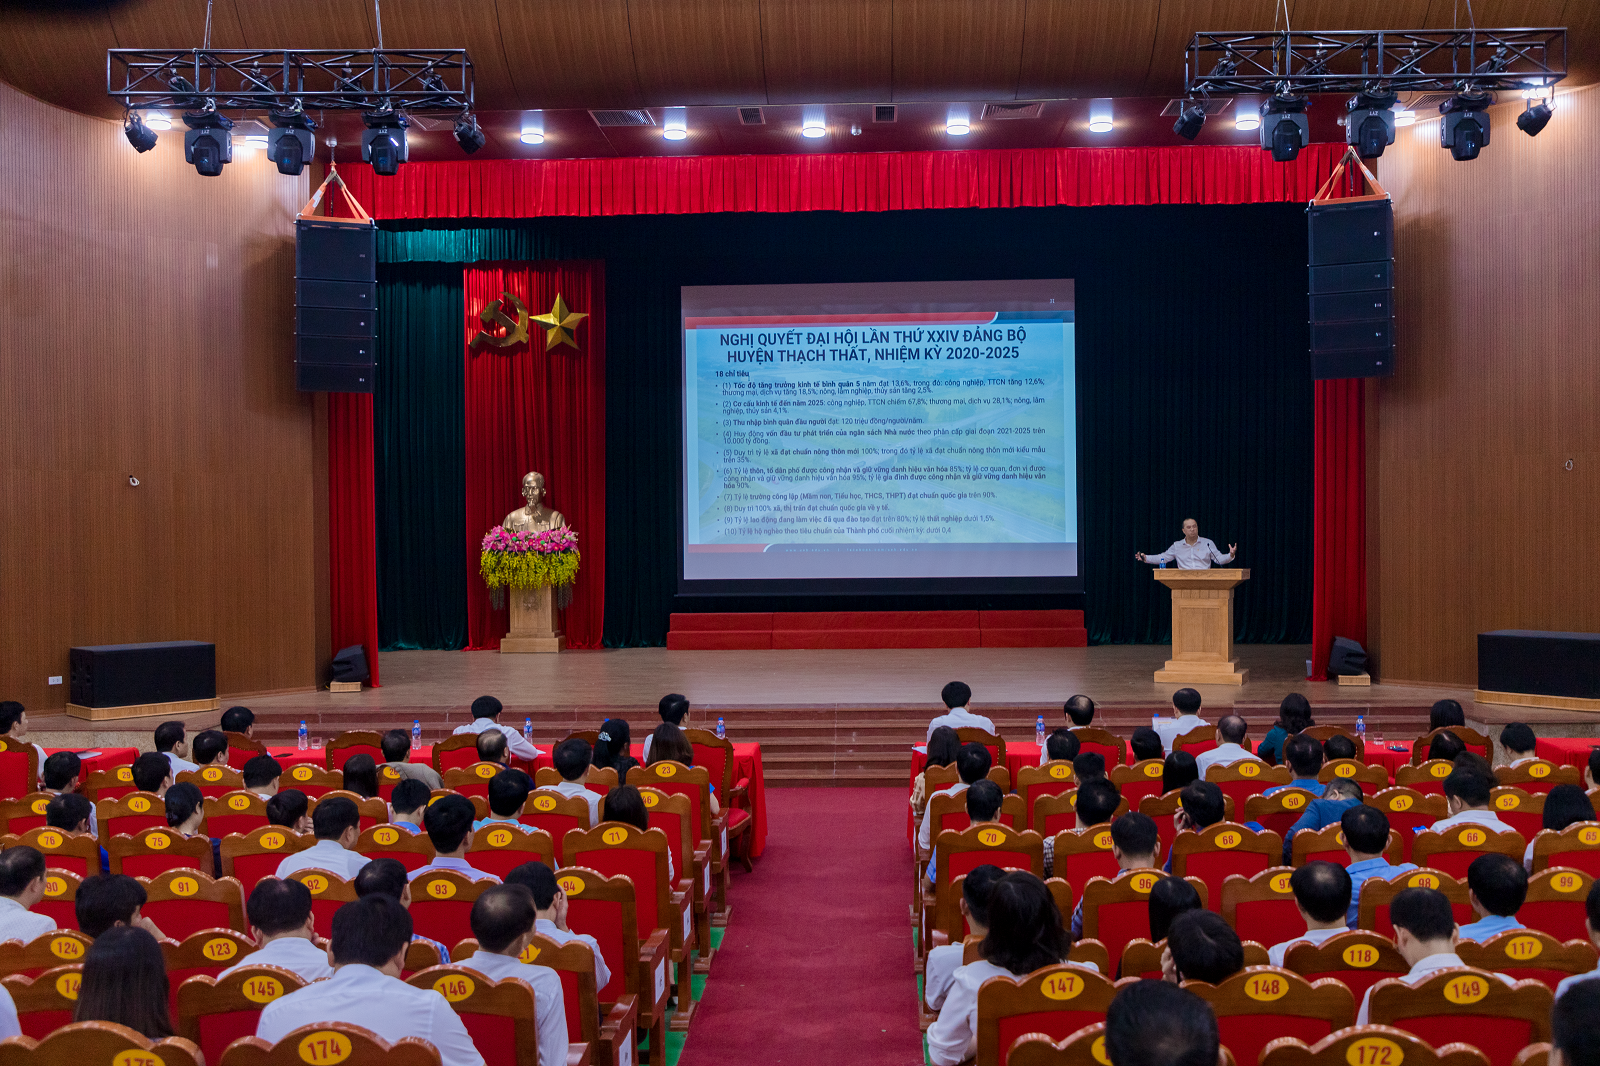 Trường Đại học Kinh tế - ĐHQGHN đồng hành cùng huyện Thạch Thất, Hà Nội đào tạo, bồi dưỡng kiến thức mới cho cán bộ quản lý